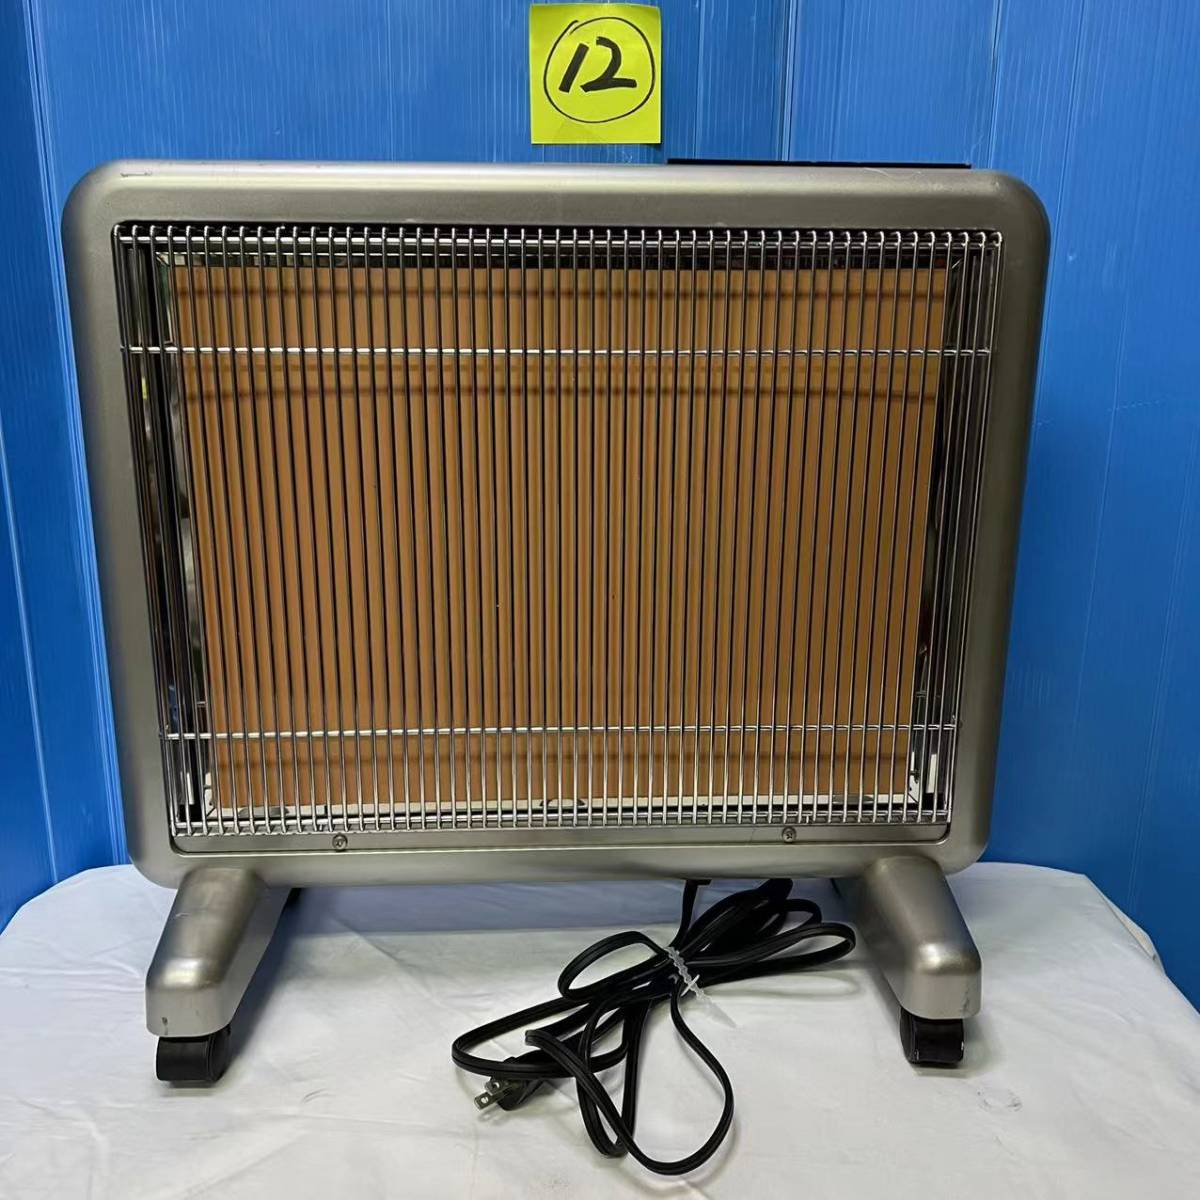 サンルミエ 遠赤外線暖房器 E800L-TM - rehda.com